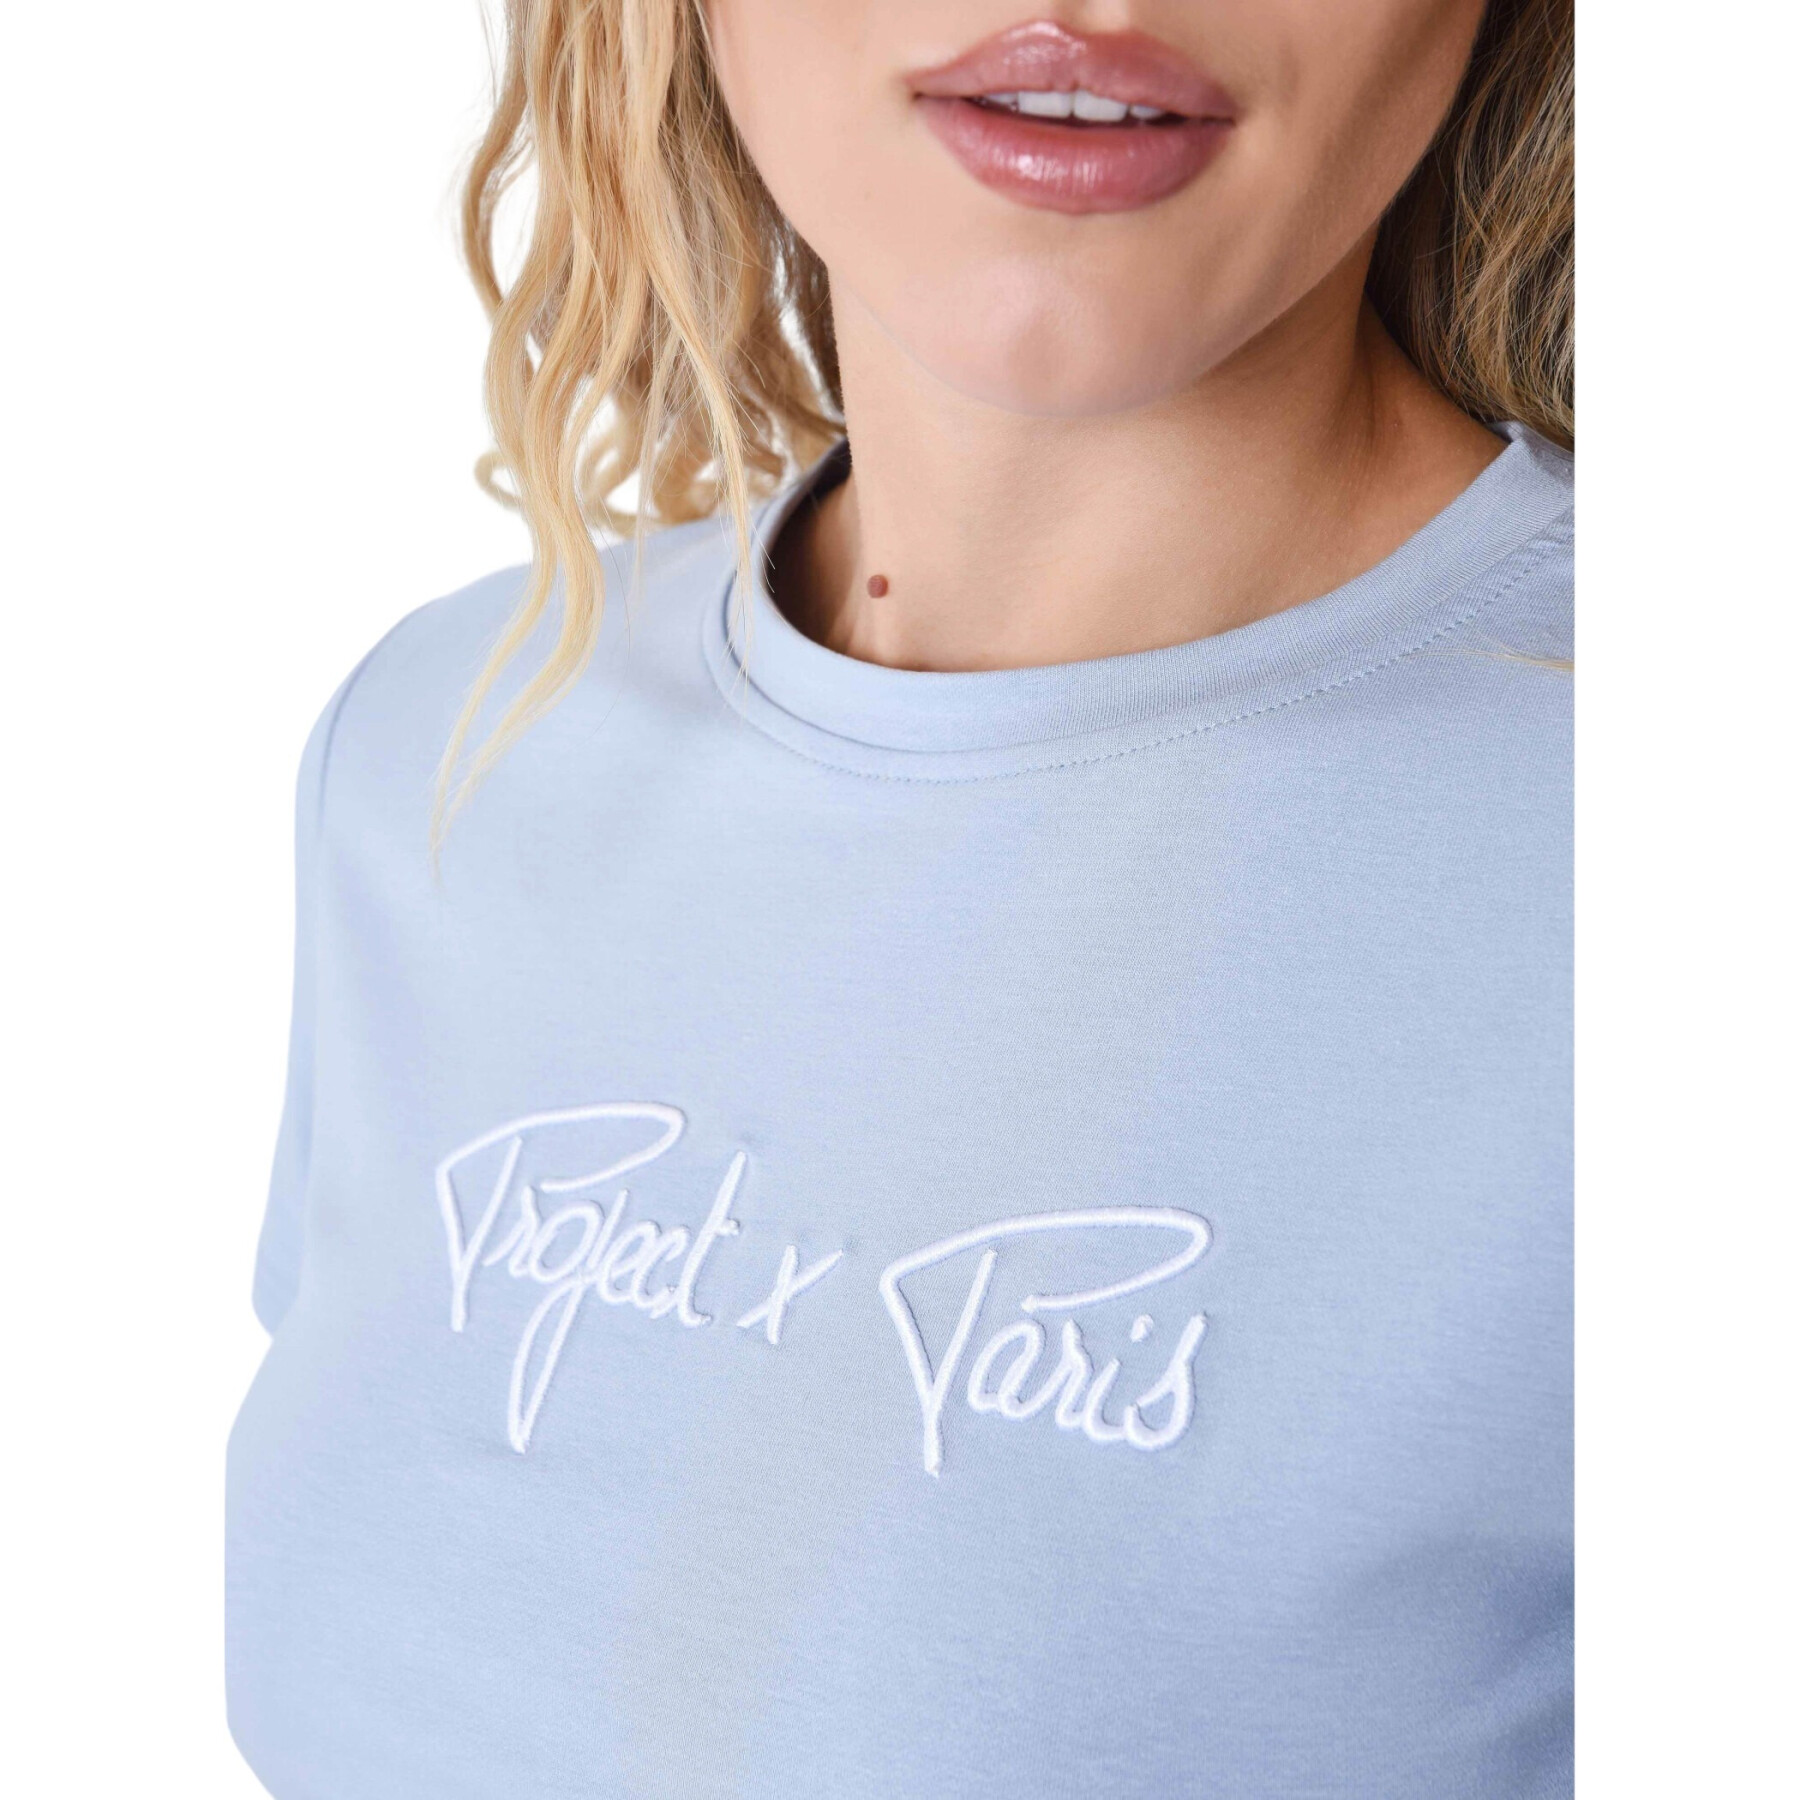 T-Shirt Frau Project X Paris